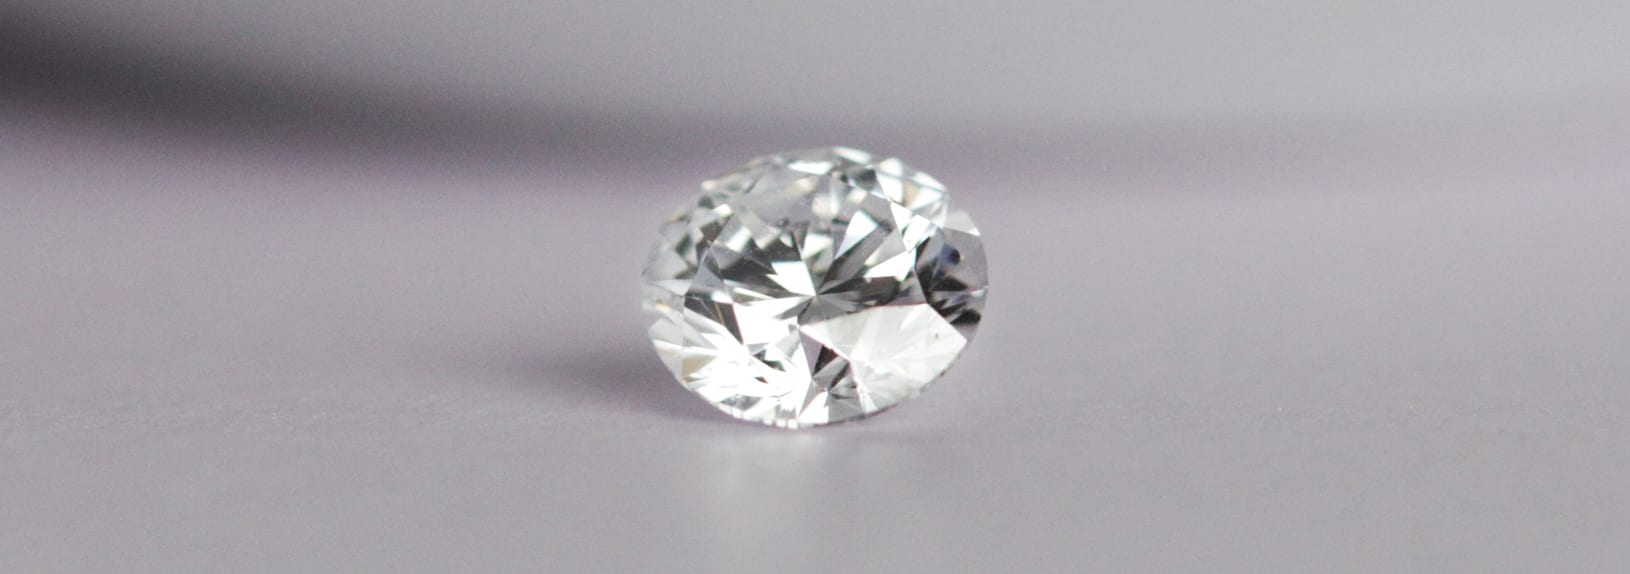 Diamond vs White Sapphire